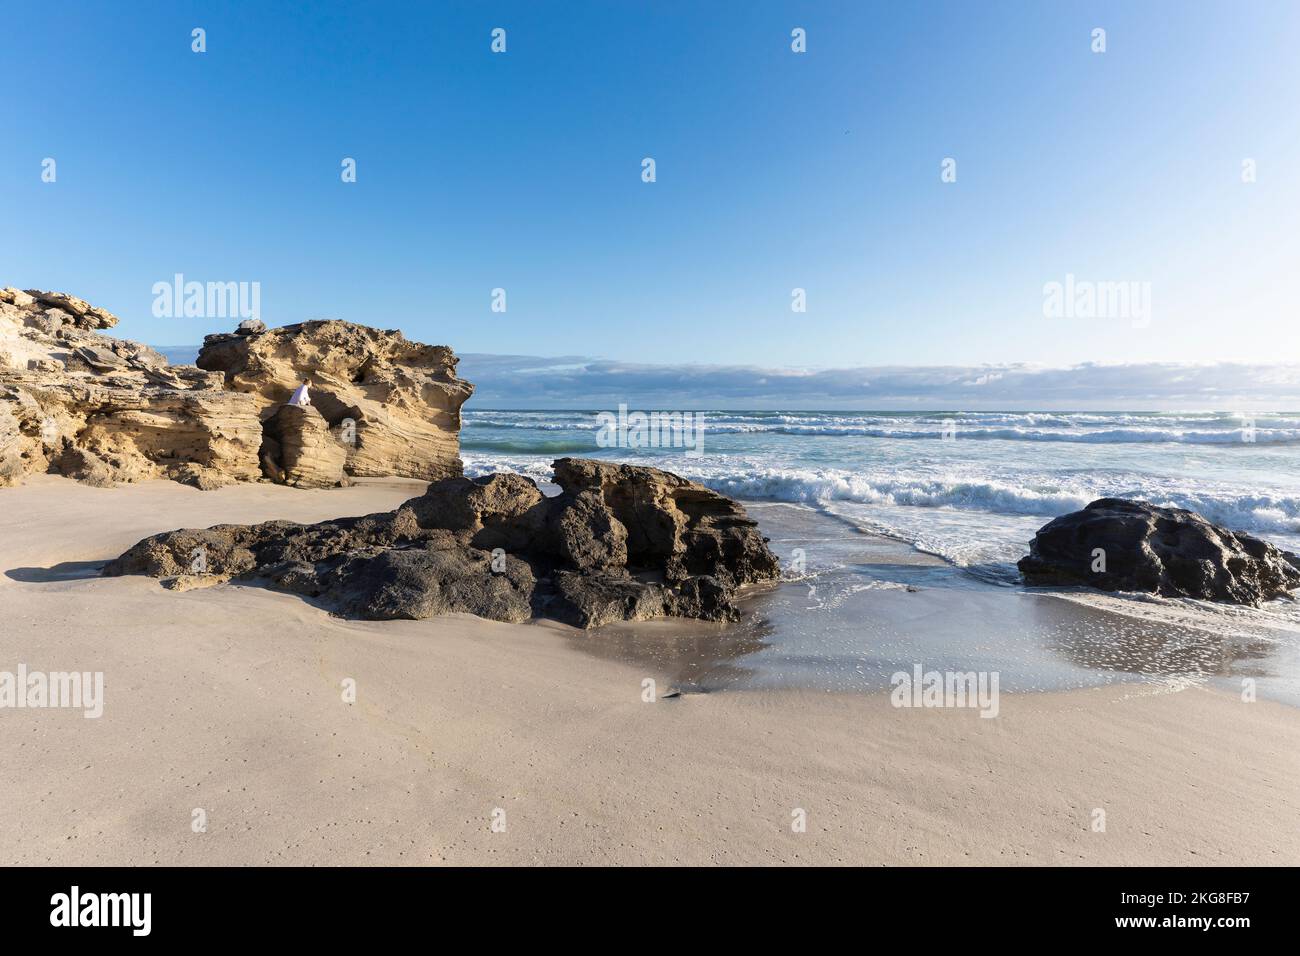 Afrique du Sud, Hermanus, vagues s'écrasant sur la formation de roche sur la plage Banque D'Images